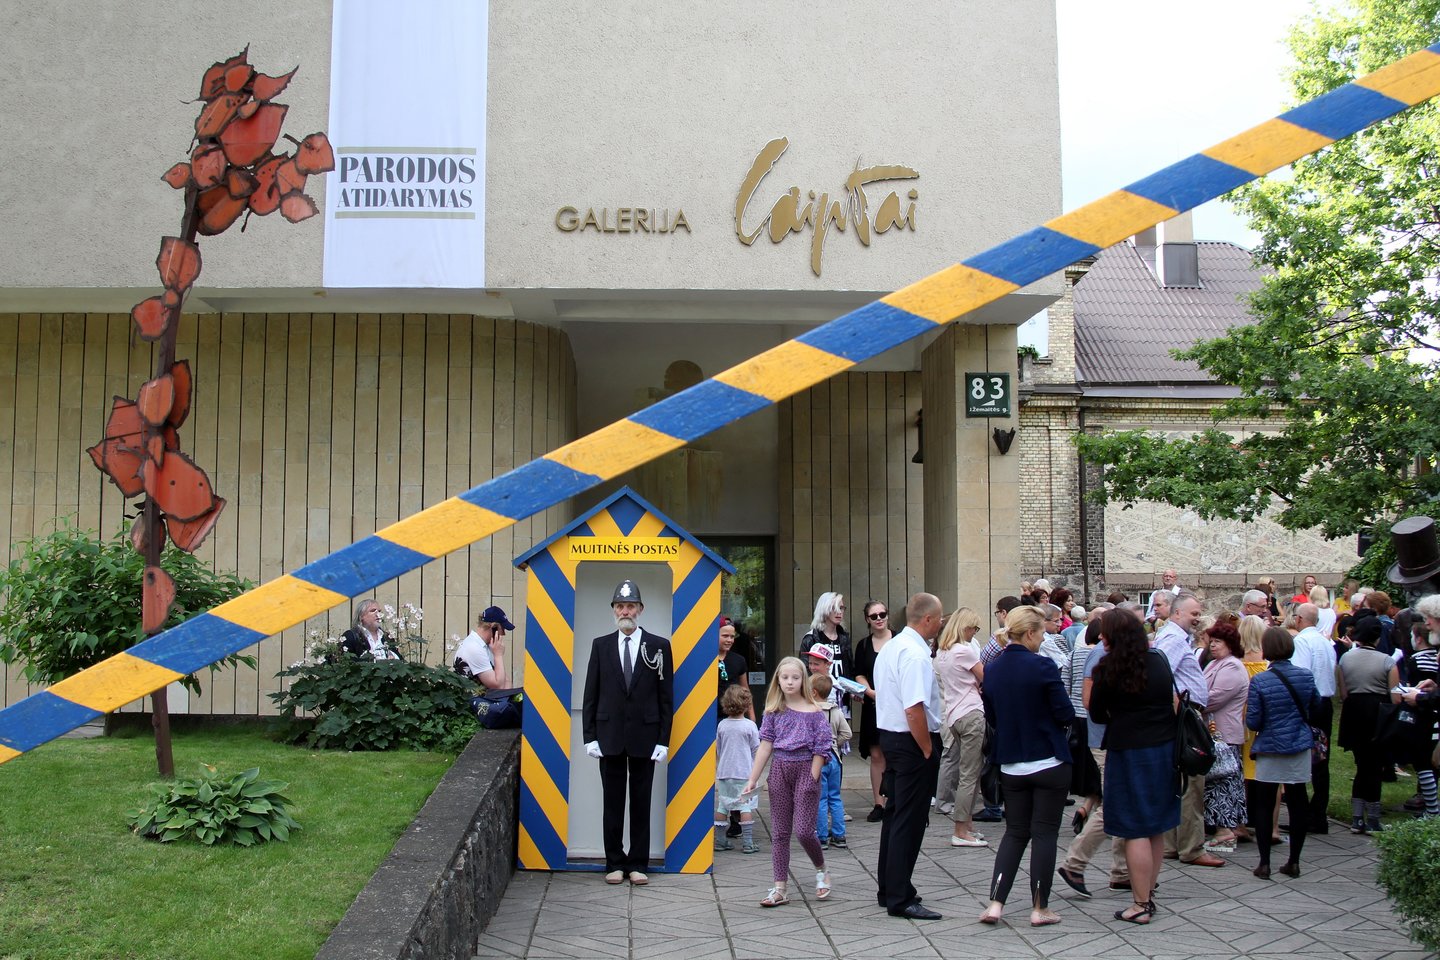   Jau 17-tą kartą rengiamas dailės festivalis „Šiaulių Monmartro Respublika“ tapo reprezentaciniu Šiaulių miesto kultūriniu renginiu. <br> R.Vitkaus nuotr. 